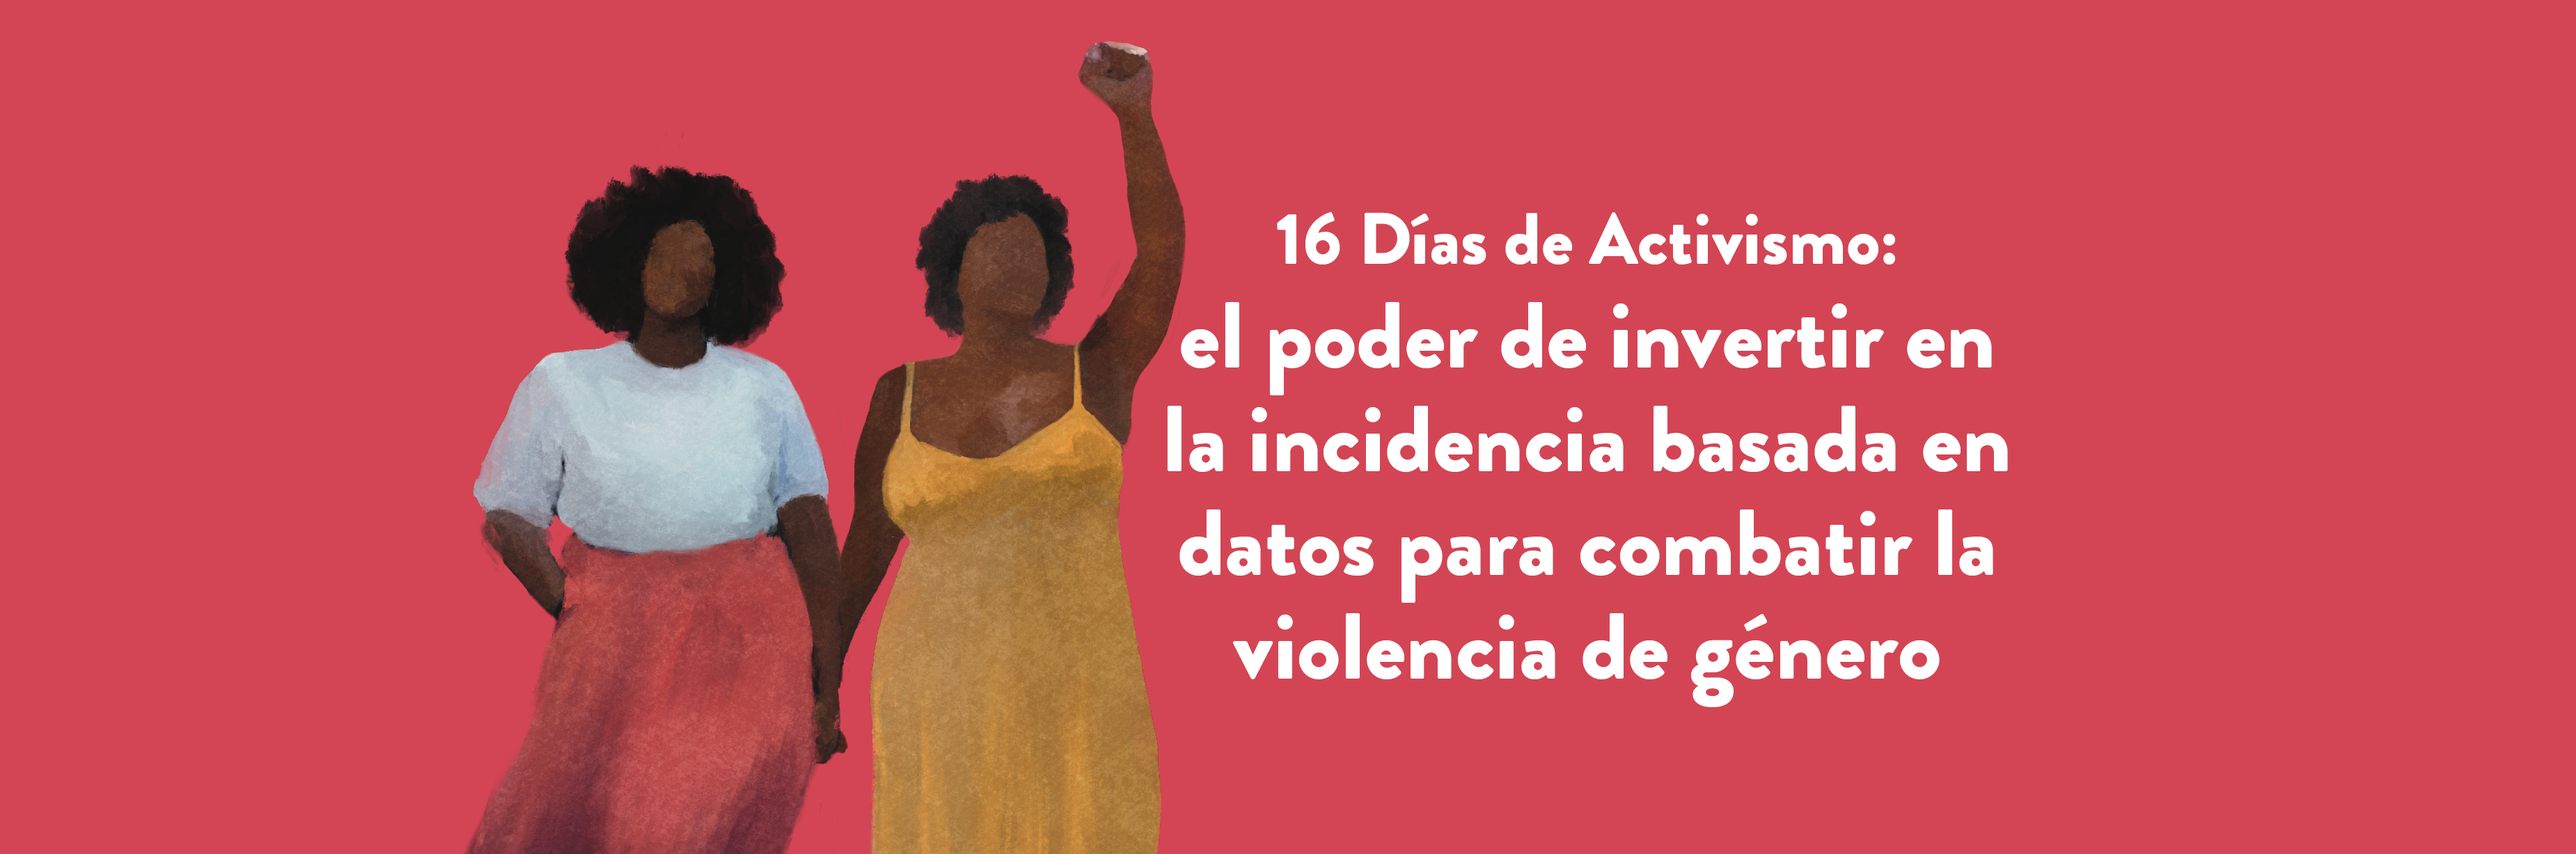 16 Días de Activismo: el poder de invertir en la incidencia basada en datos para combatir la violencia de género 